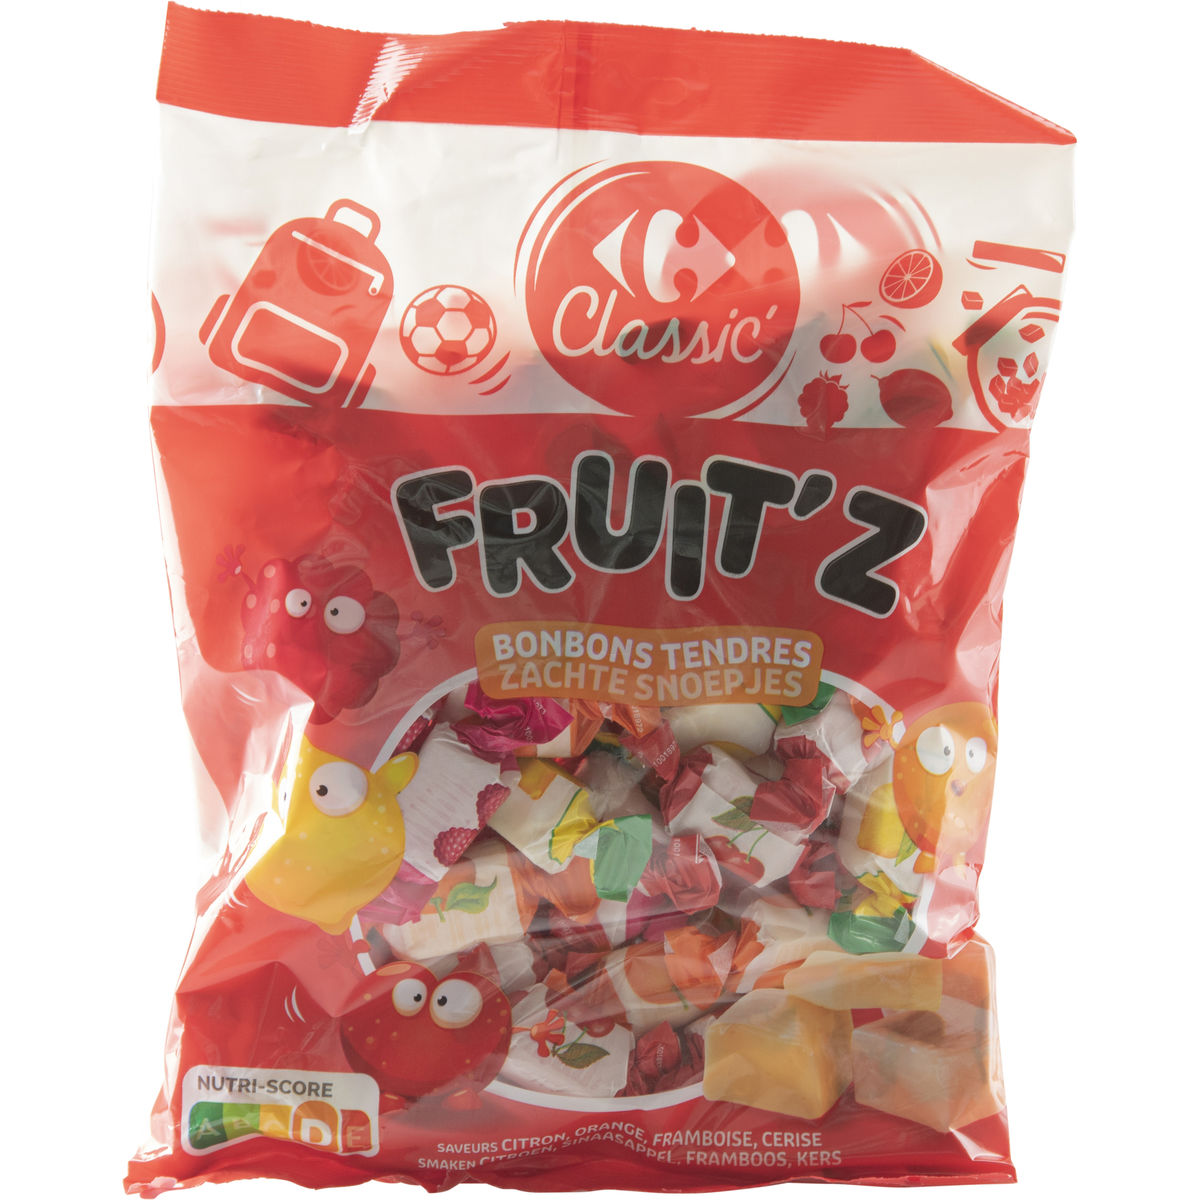 Carrefour Soft Candy's Zachte Snoepjes 500 g